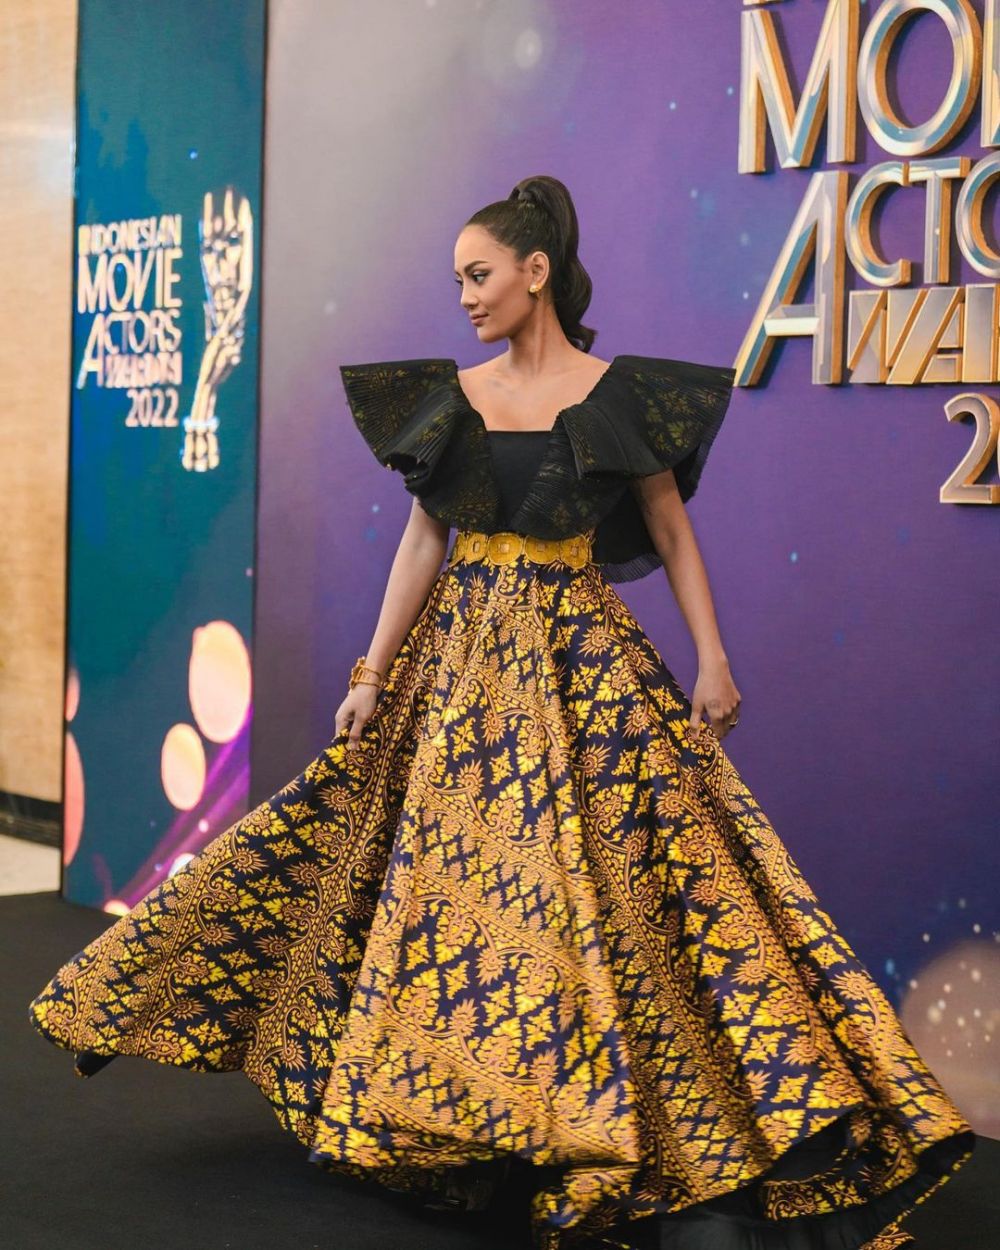 11 Gaya seleb di IMA Awards 2022, Titi Kamal pakai rok motif wayang